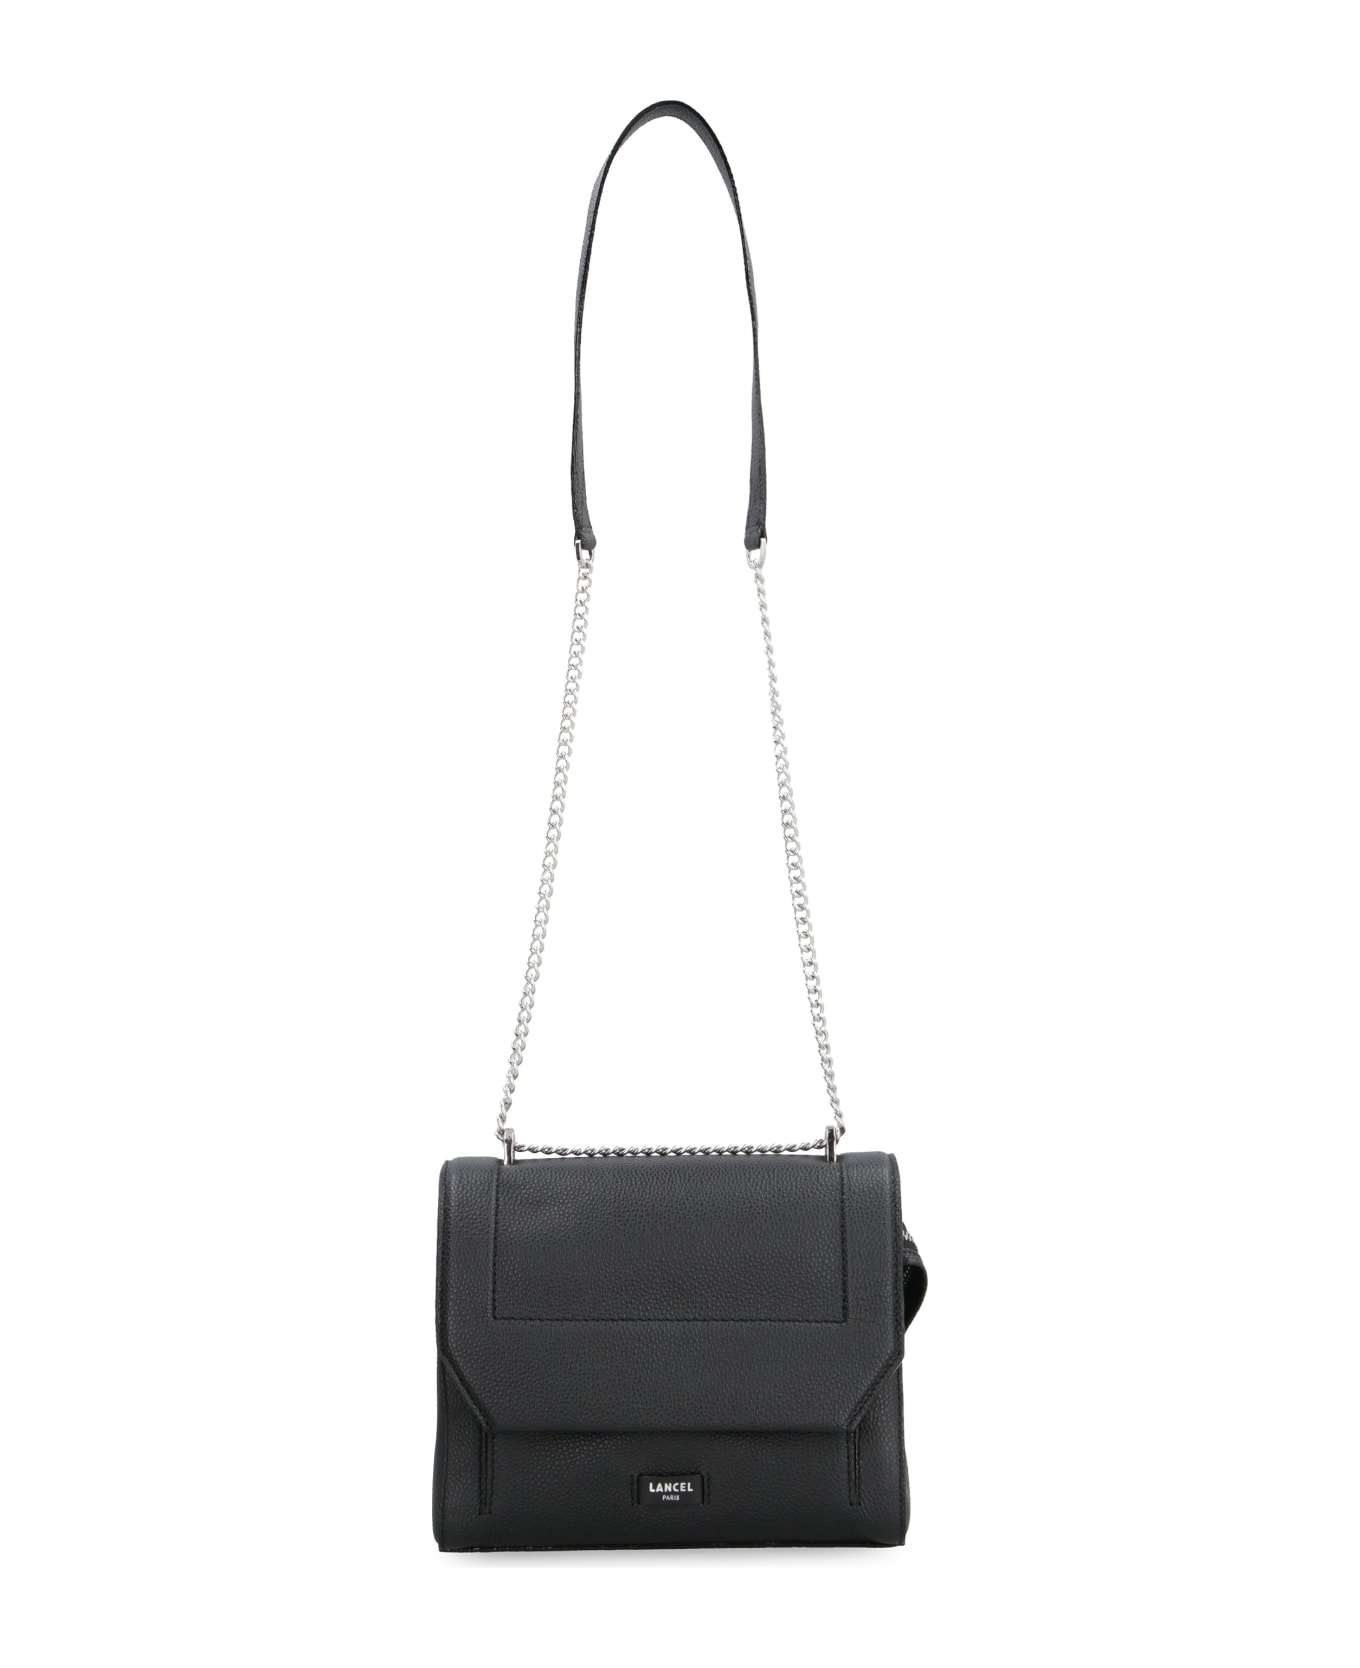 Lancel Ninon Leather Handbag - Black